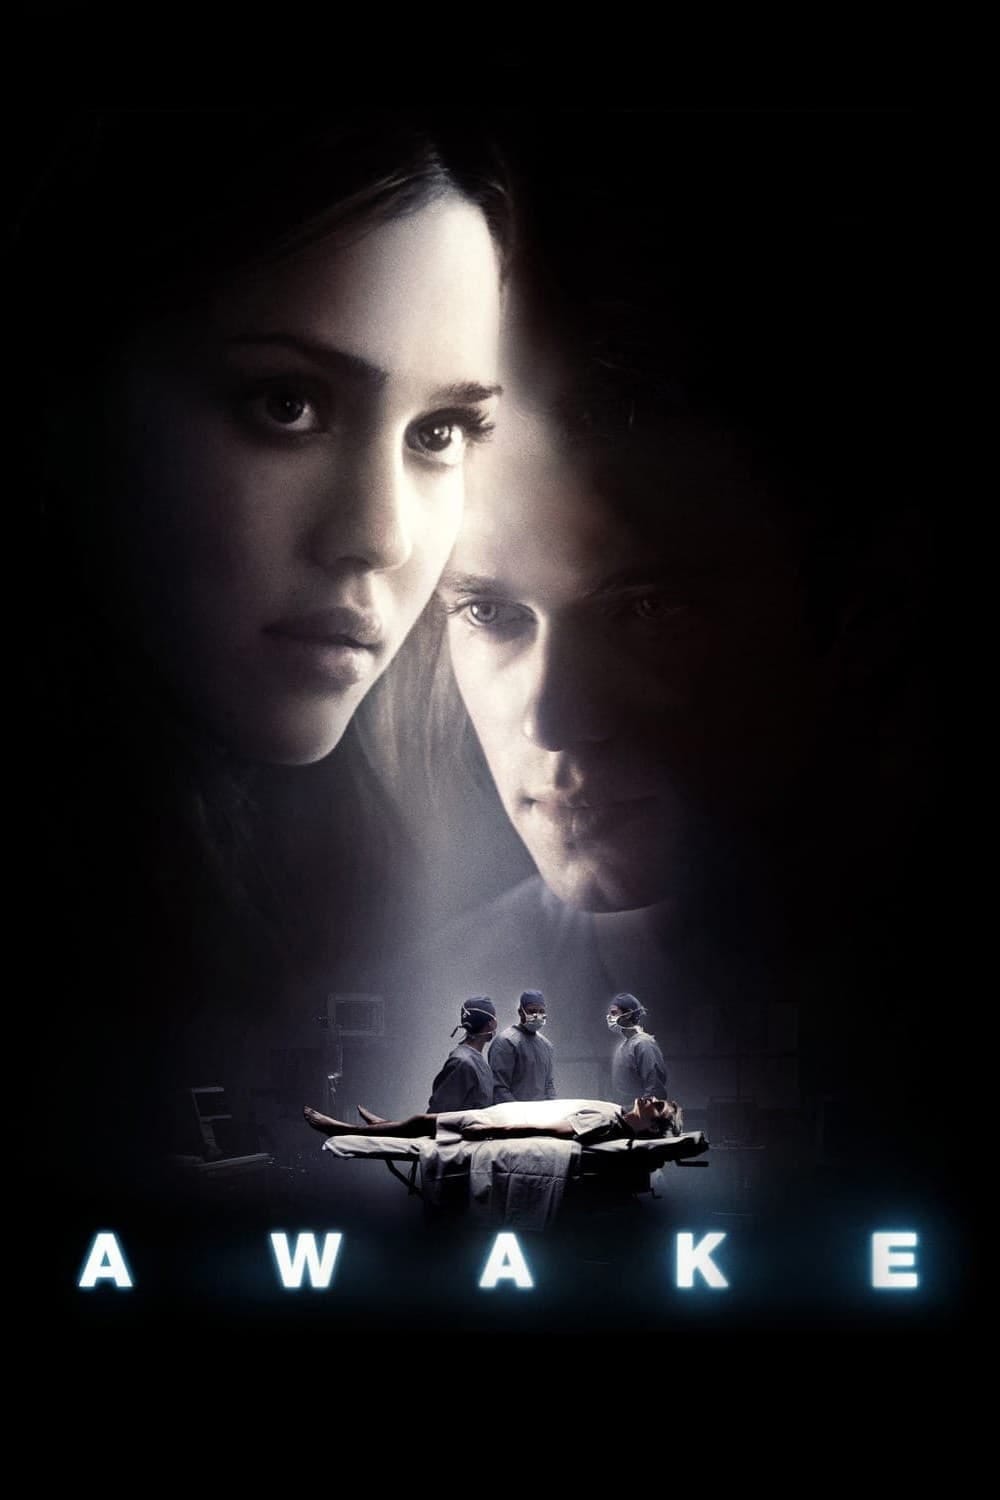 Awake (2007) | Poster